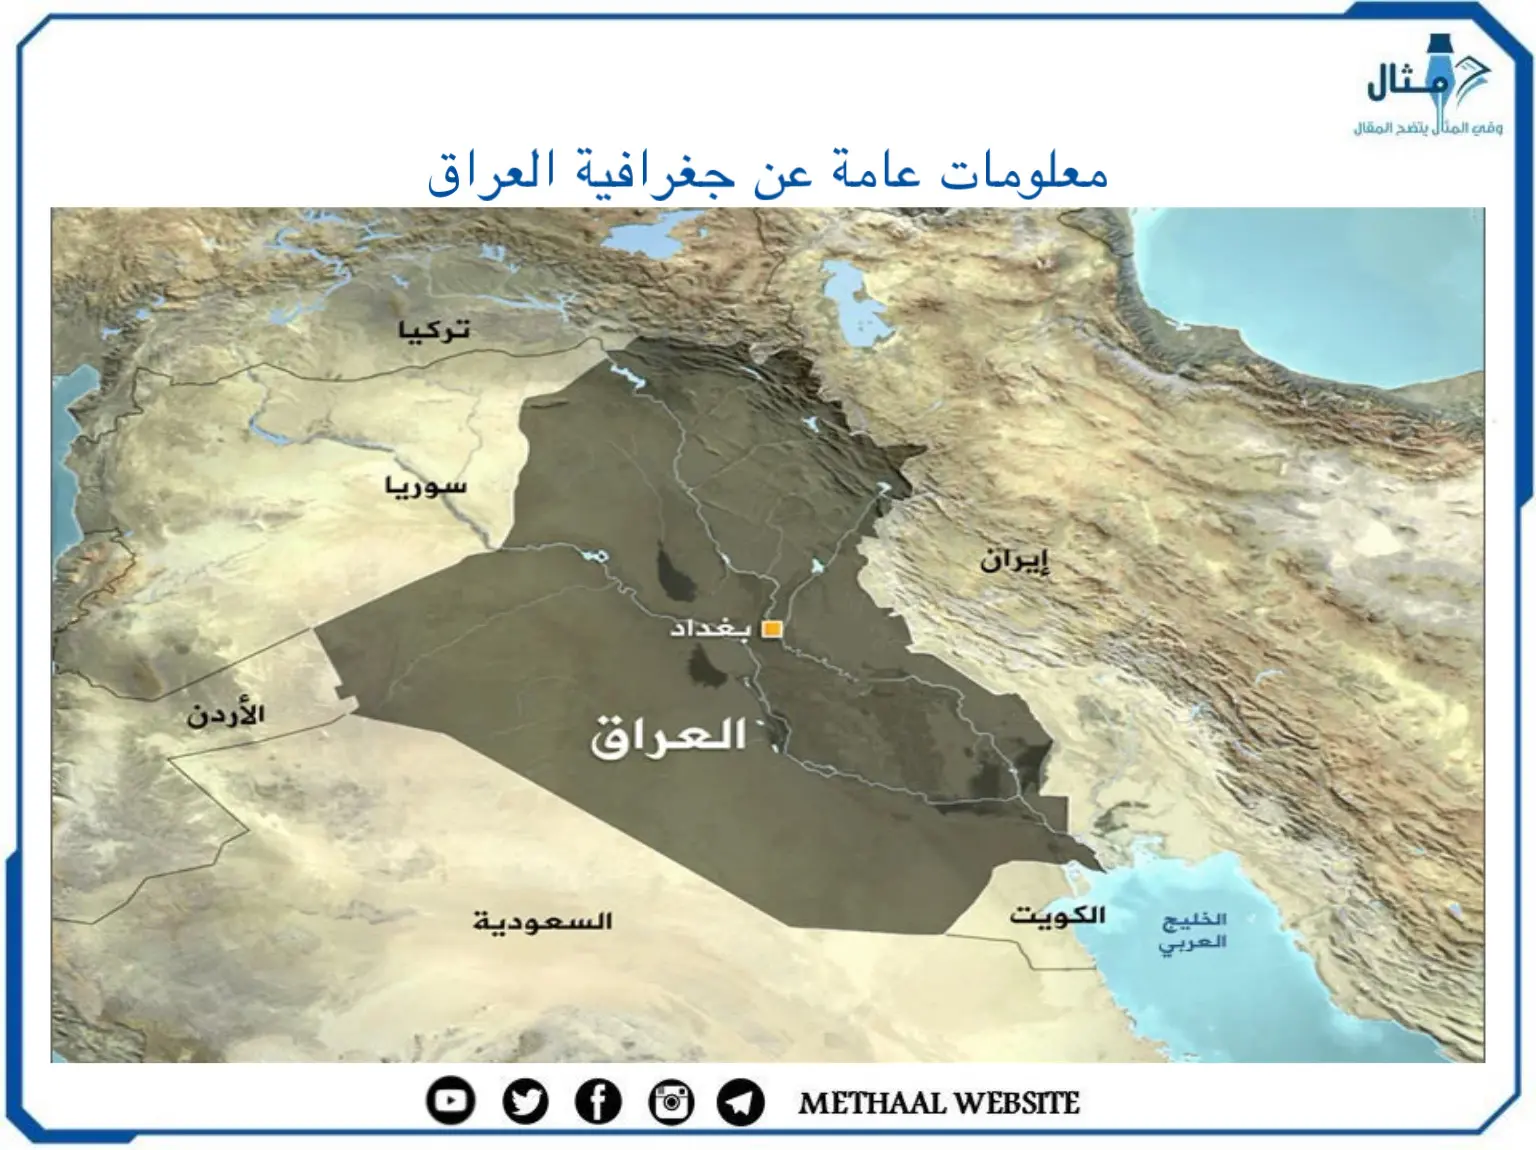 معلومات عامة عن جغرافية العراق